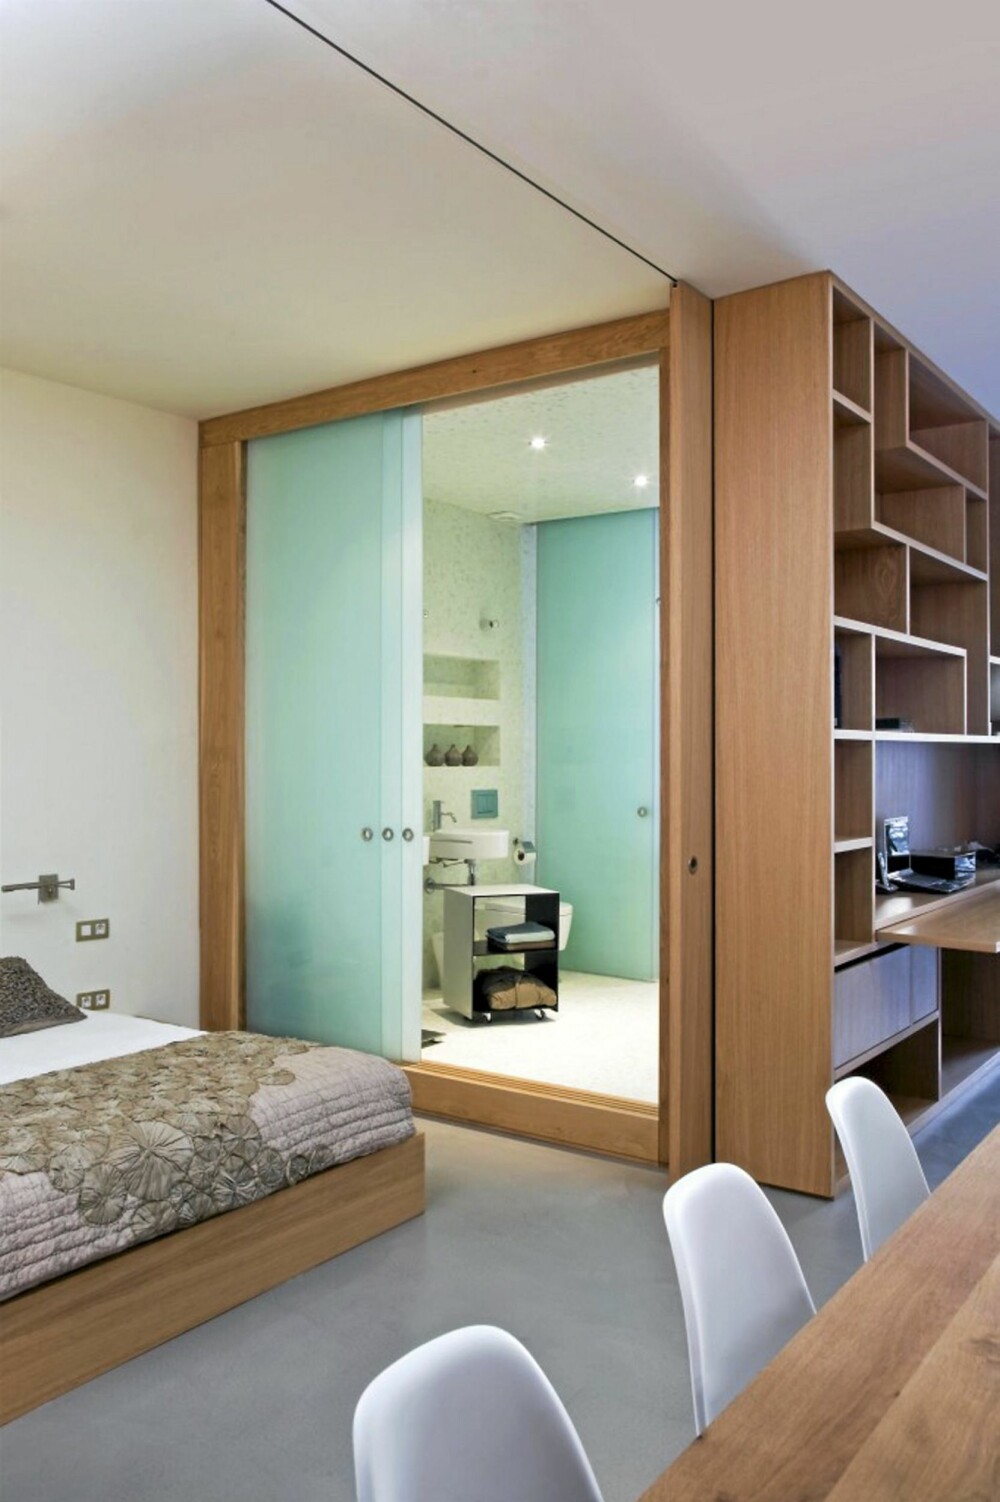 FLEKSIBEL VEGG: Soverommet kan med letthet stenges av med hjelp av den integrerte skyvedøren i kuben. De fleksible løsningene gir beboeren muligheten til å ha en åpen og luftig leilighet, samt være privat etter behov.